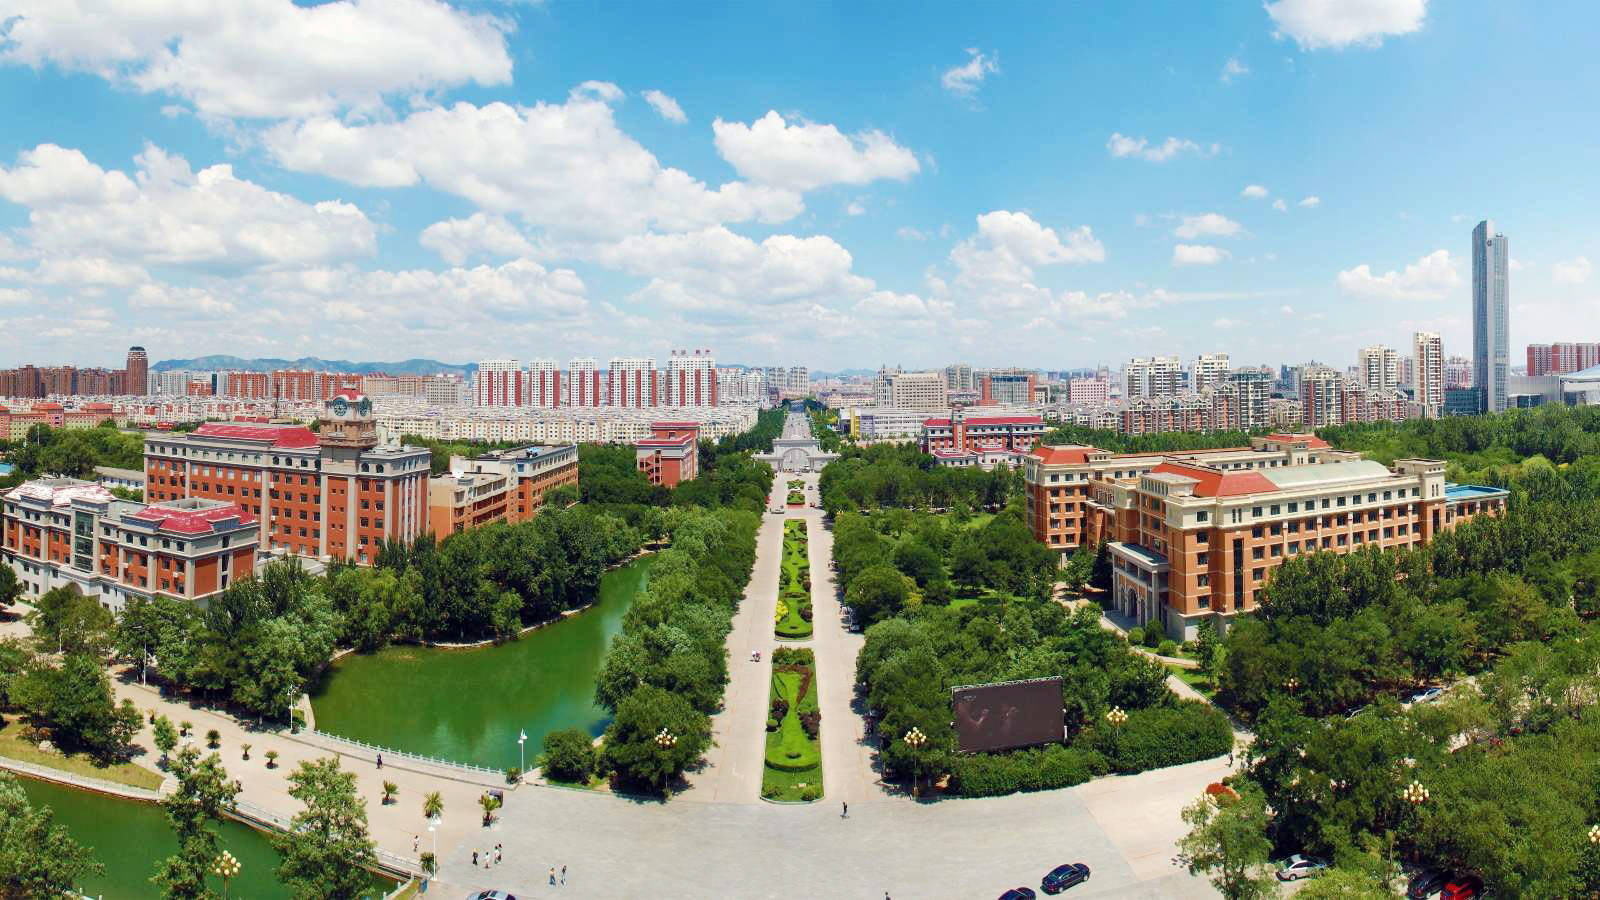 渤海大学 全景图图片